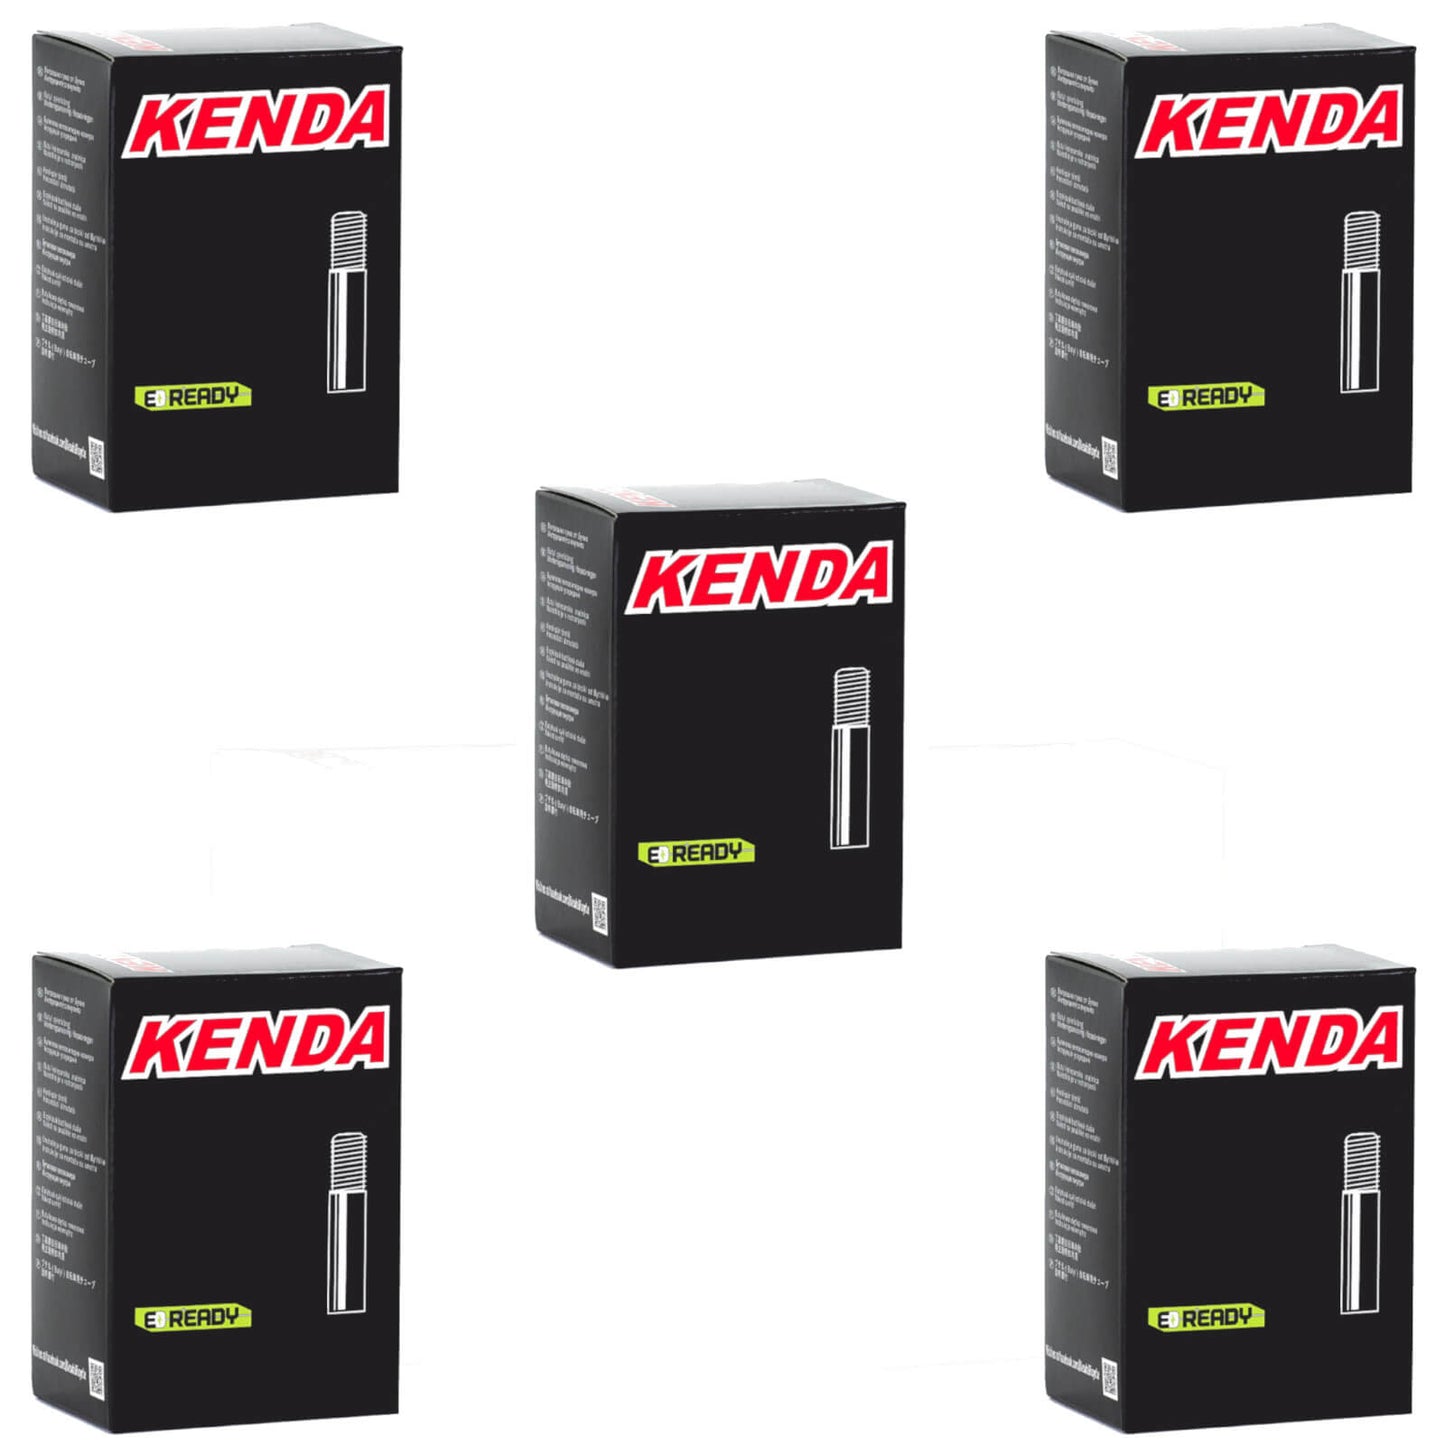 Kenda 24x2.0-2.4" 24 Inch Schrader Valve Bike Inner Tube Pack of 5